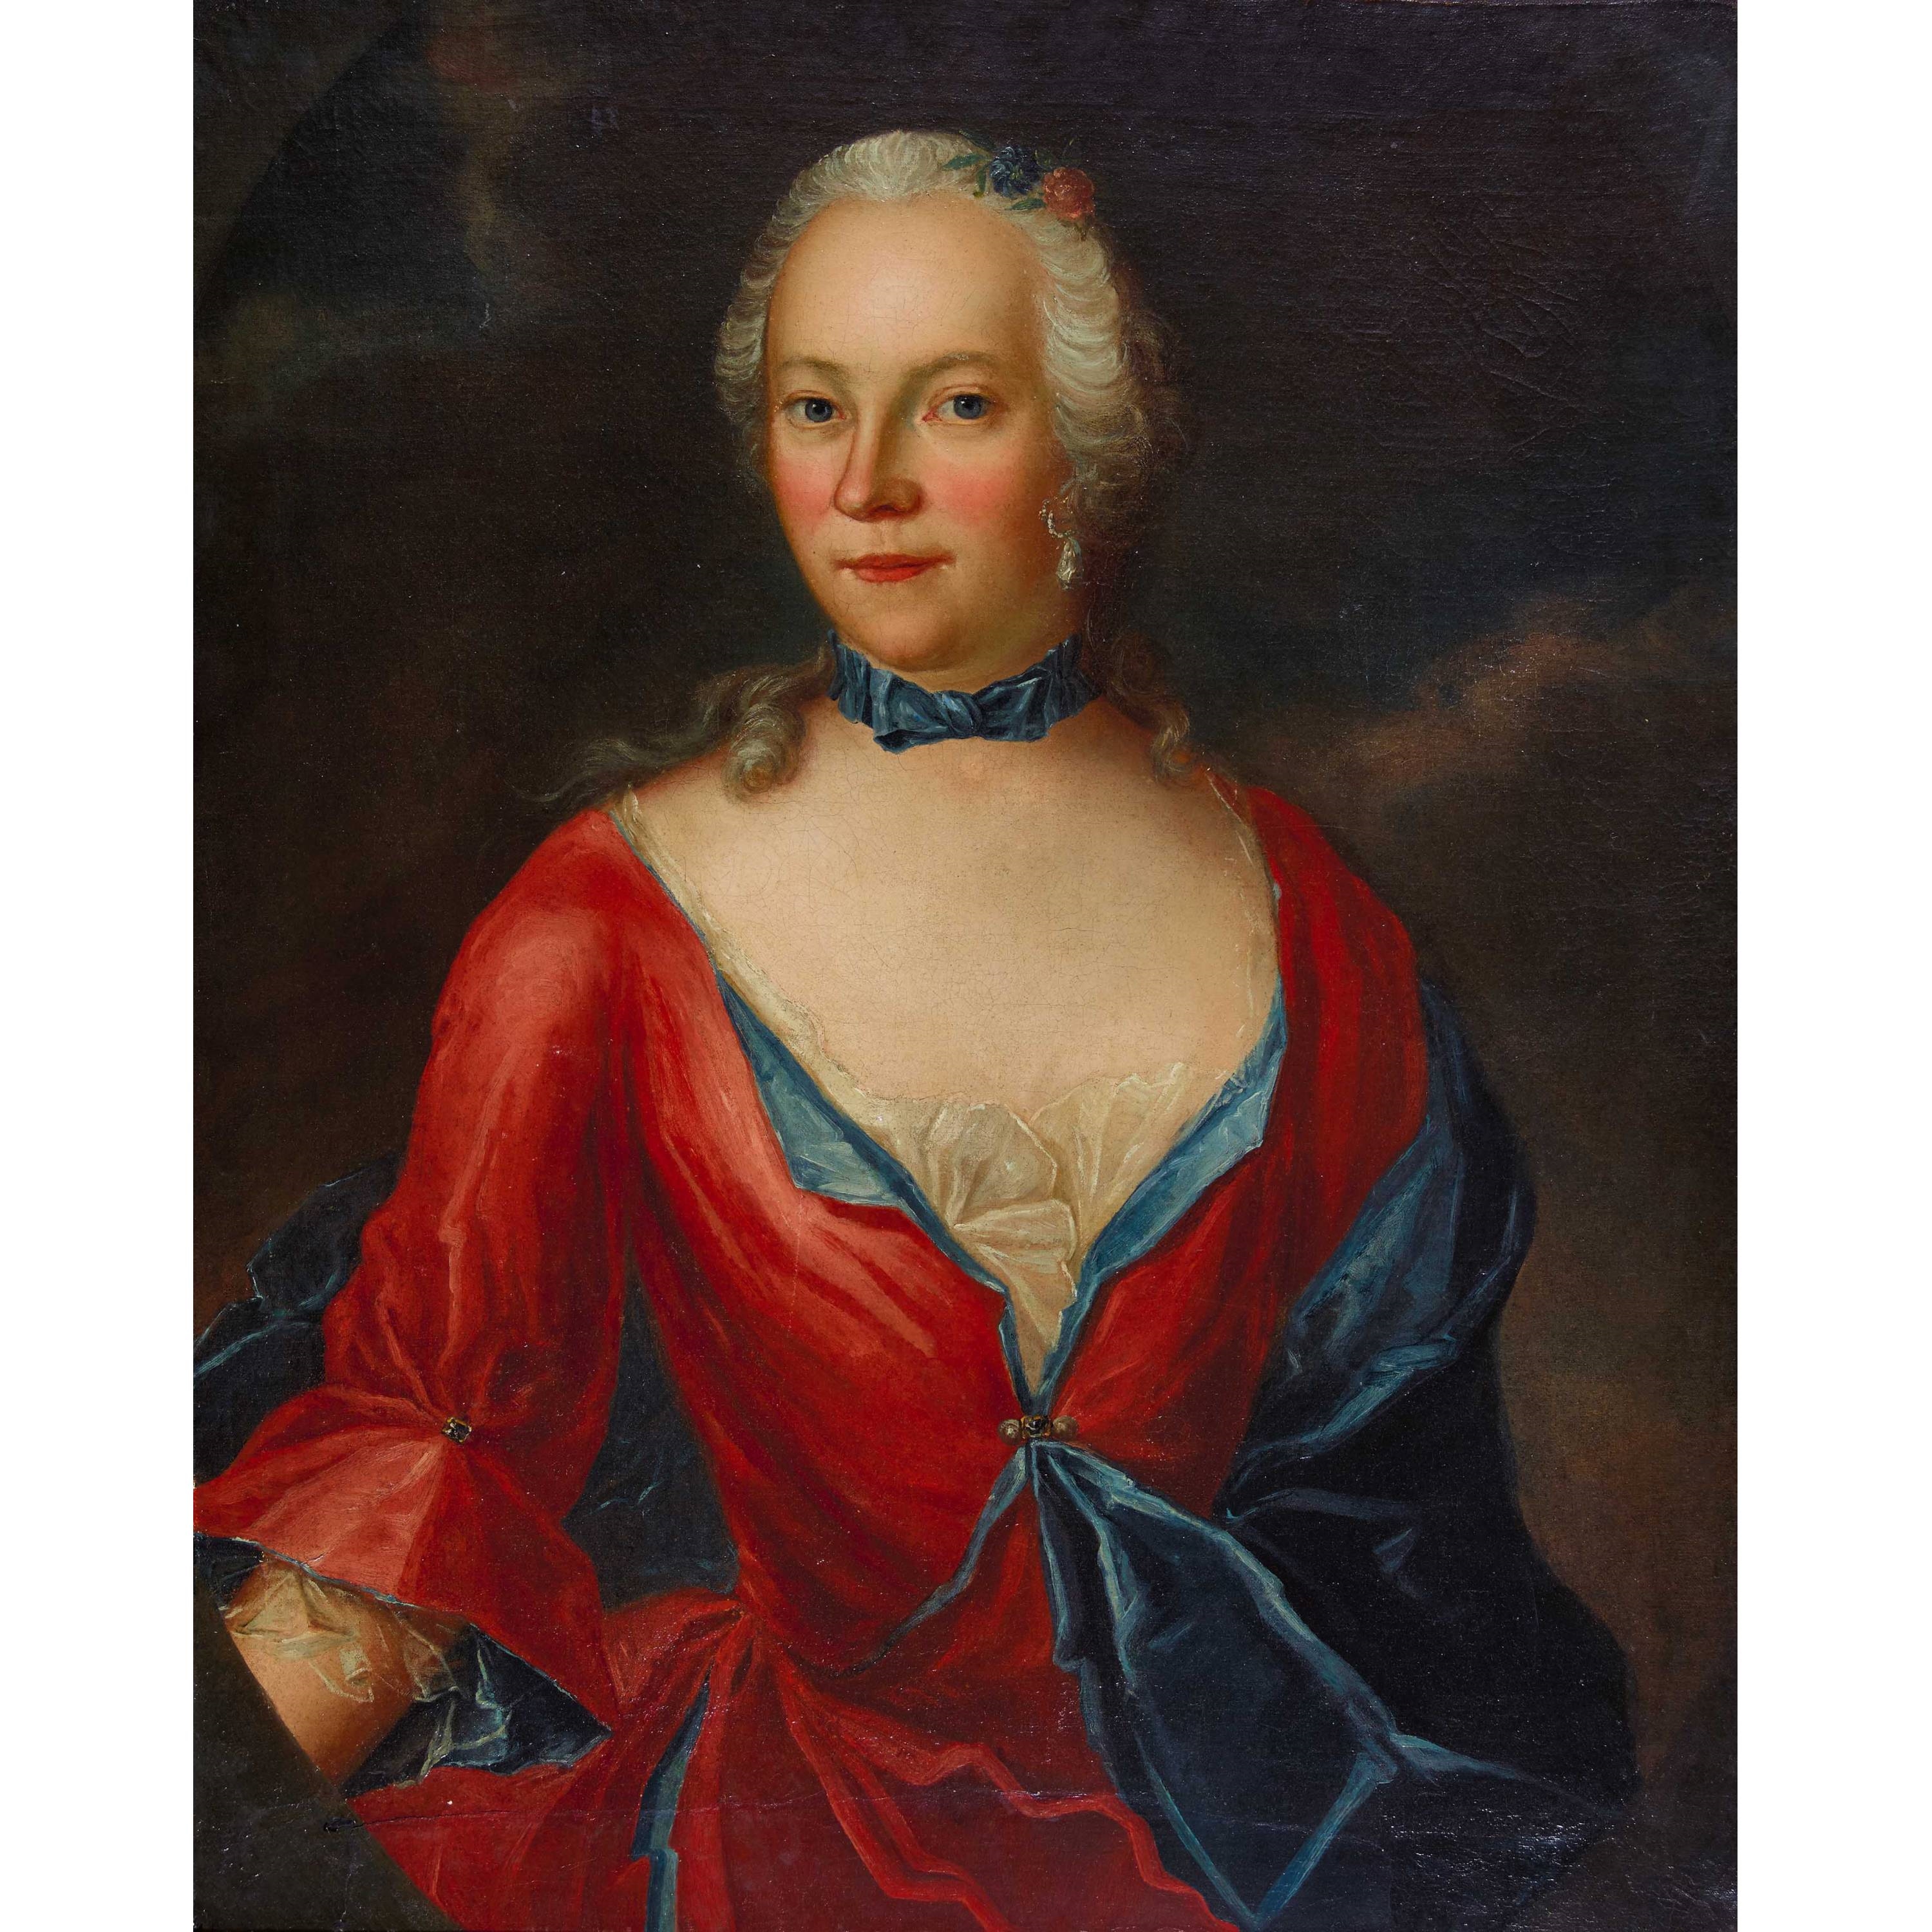 Artwork by Anton Graff, Porträt einer adligen Dame, Made of oil on canvas